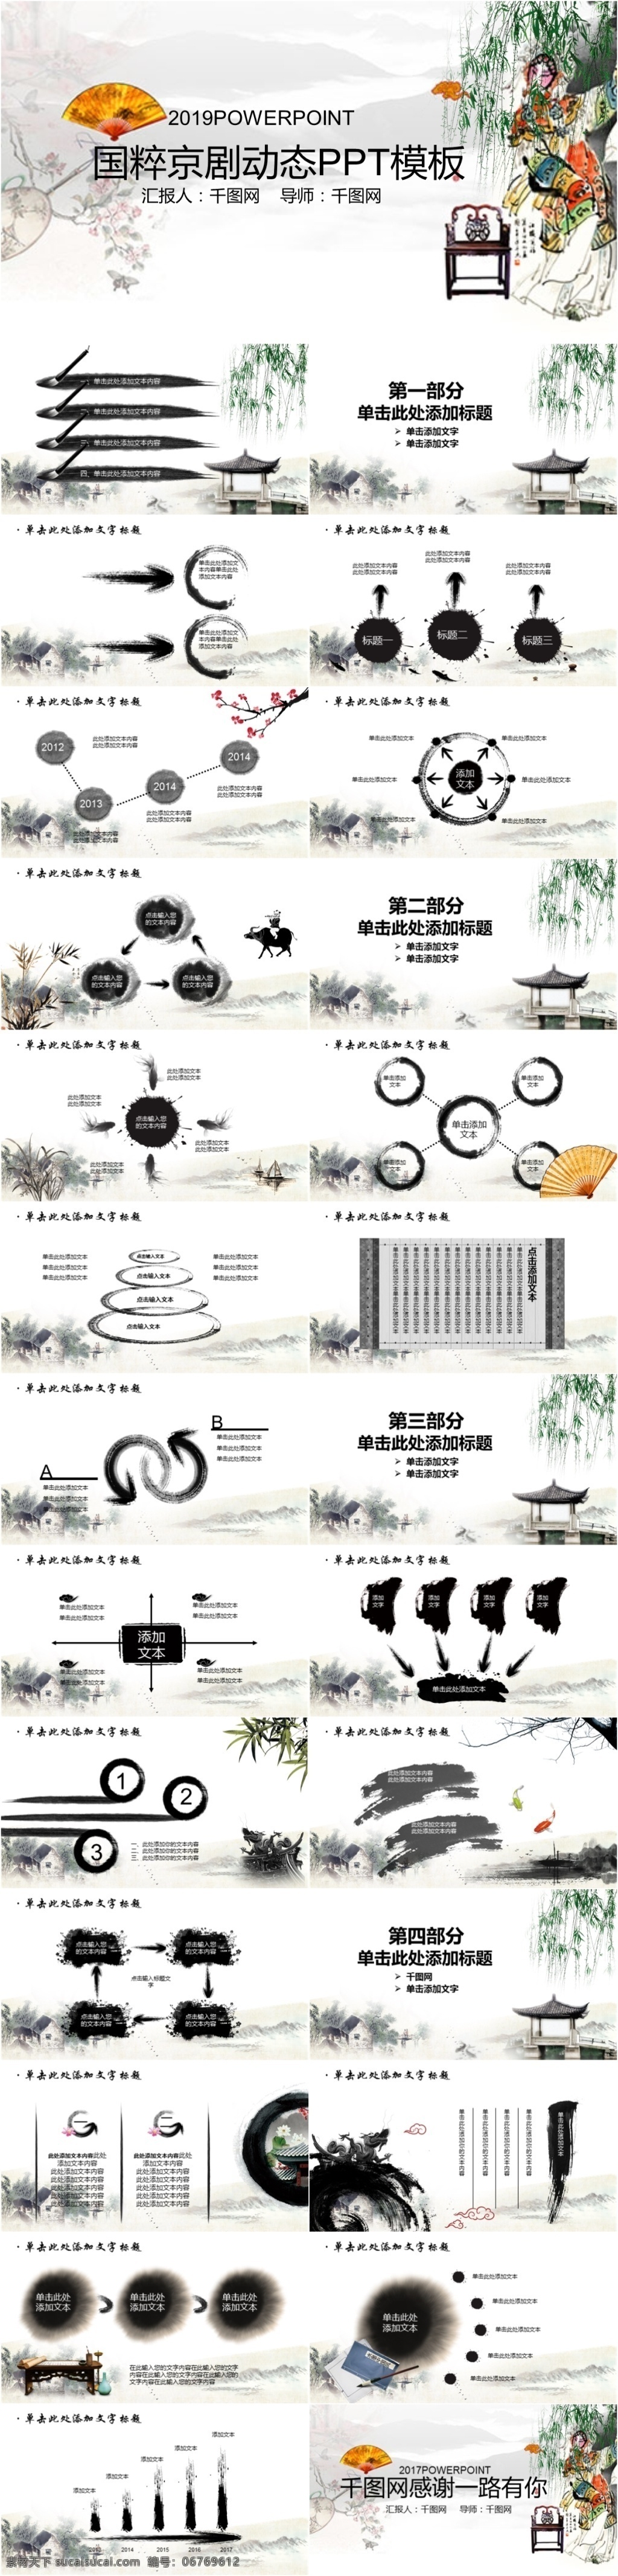 中国 戏剧 文化艺术 国粹 京剧 古典 模板 艺术 ppt模板 通用 创意 简约 大气 教师课件